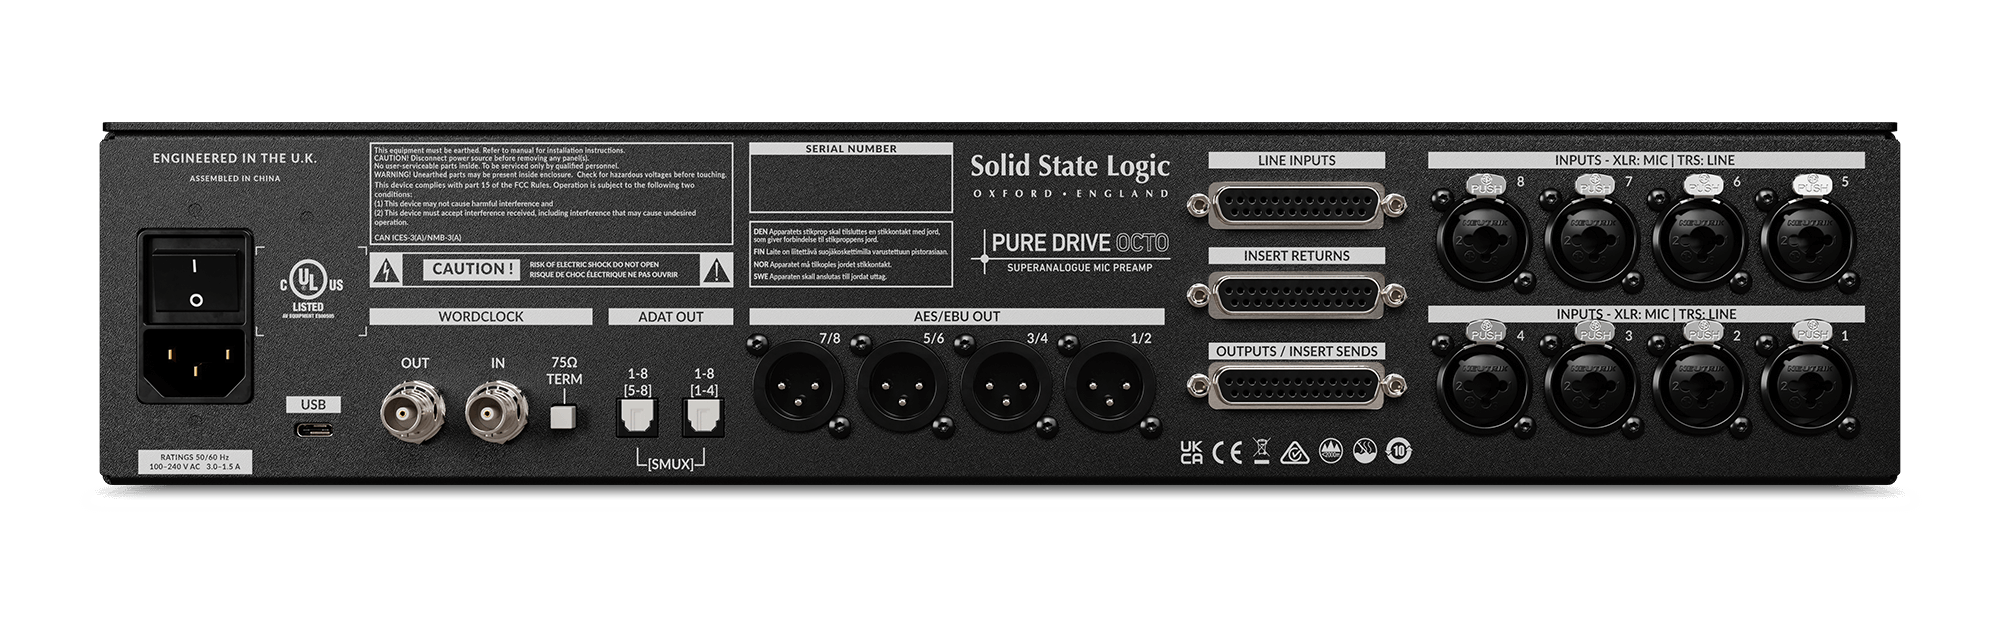 Solid State Logic SSL Puredrive Octo Pre Amp